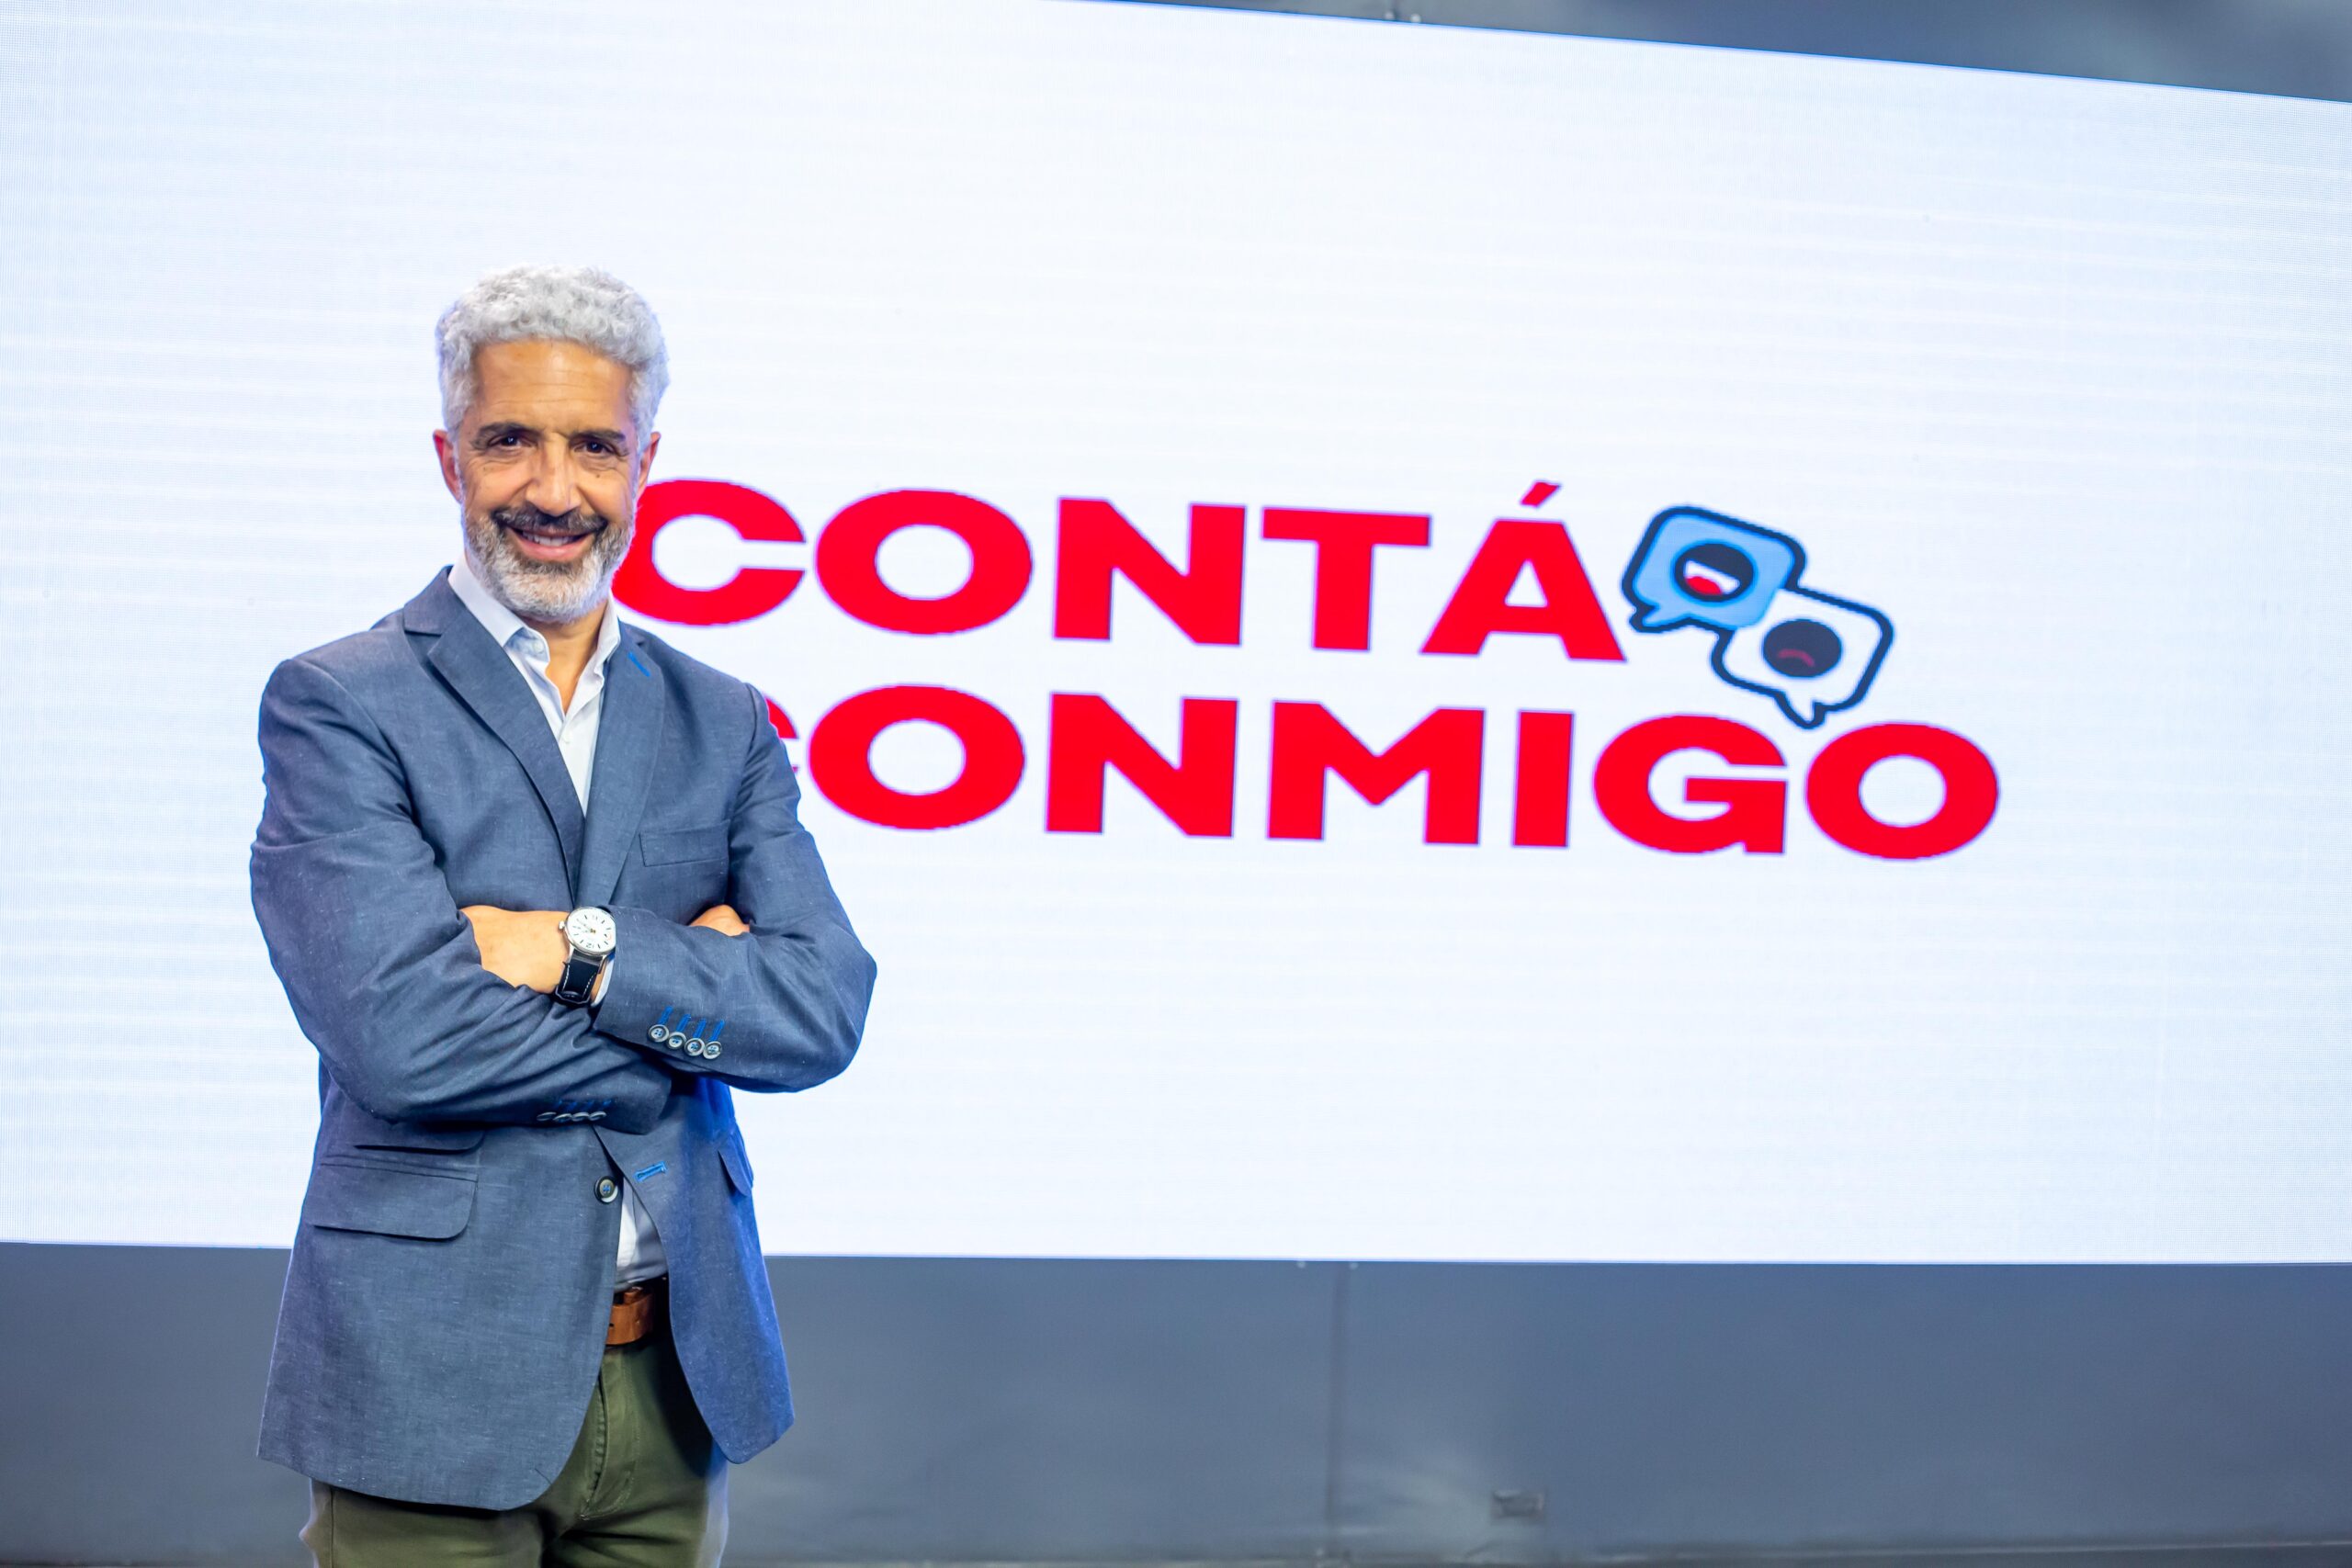 Canal C Argentina presenta Contá conmigo, con Fernando Genesir • Canal C